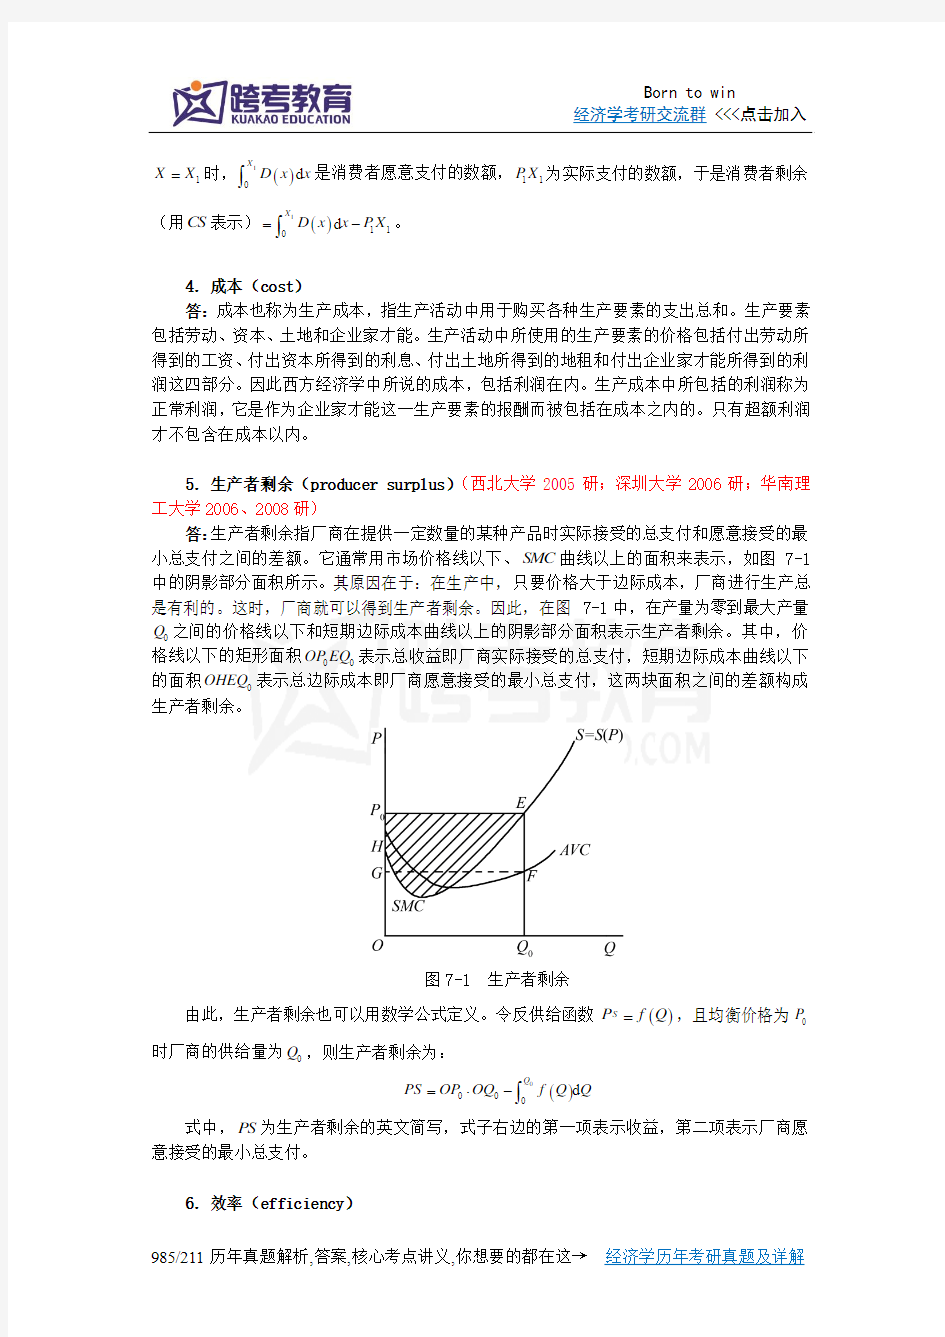 曼昆《经济学原理(微观经济学分册)》(第6版)课后习题详解(第7章  消费者、生产者与市场效率)